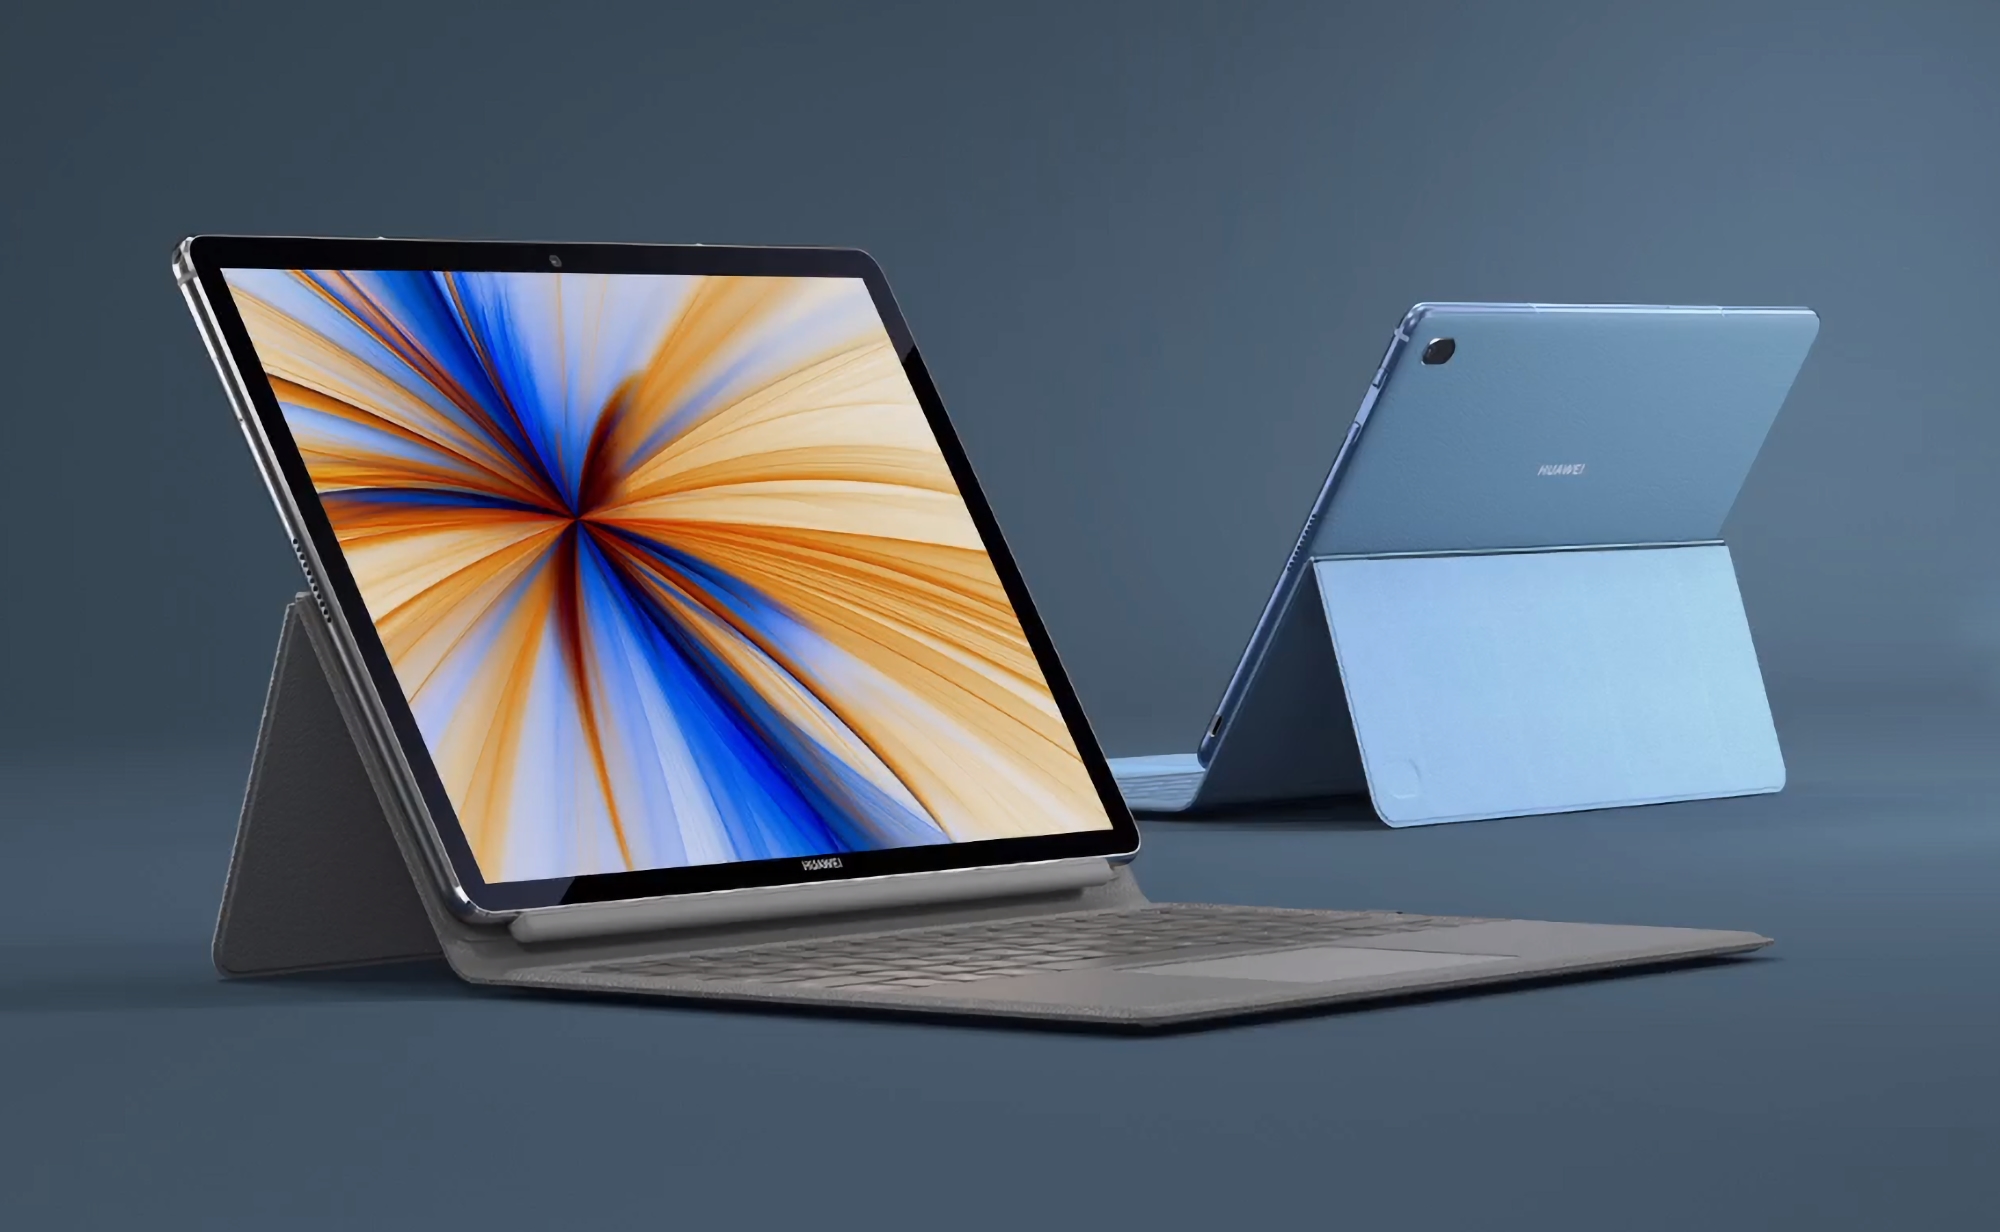 Quelle: Huawei bereitet Laptop vor, der mit Microsoft Surface konkurrieren soll